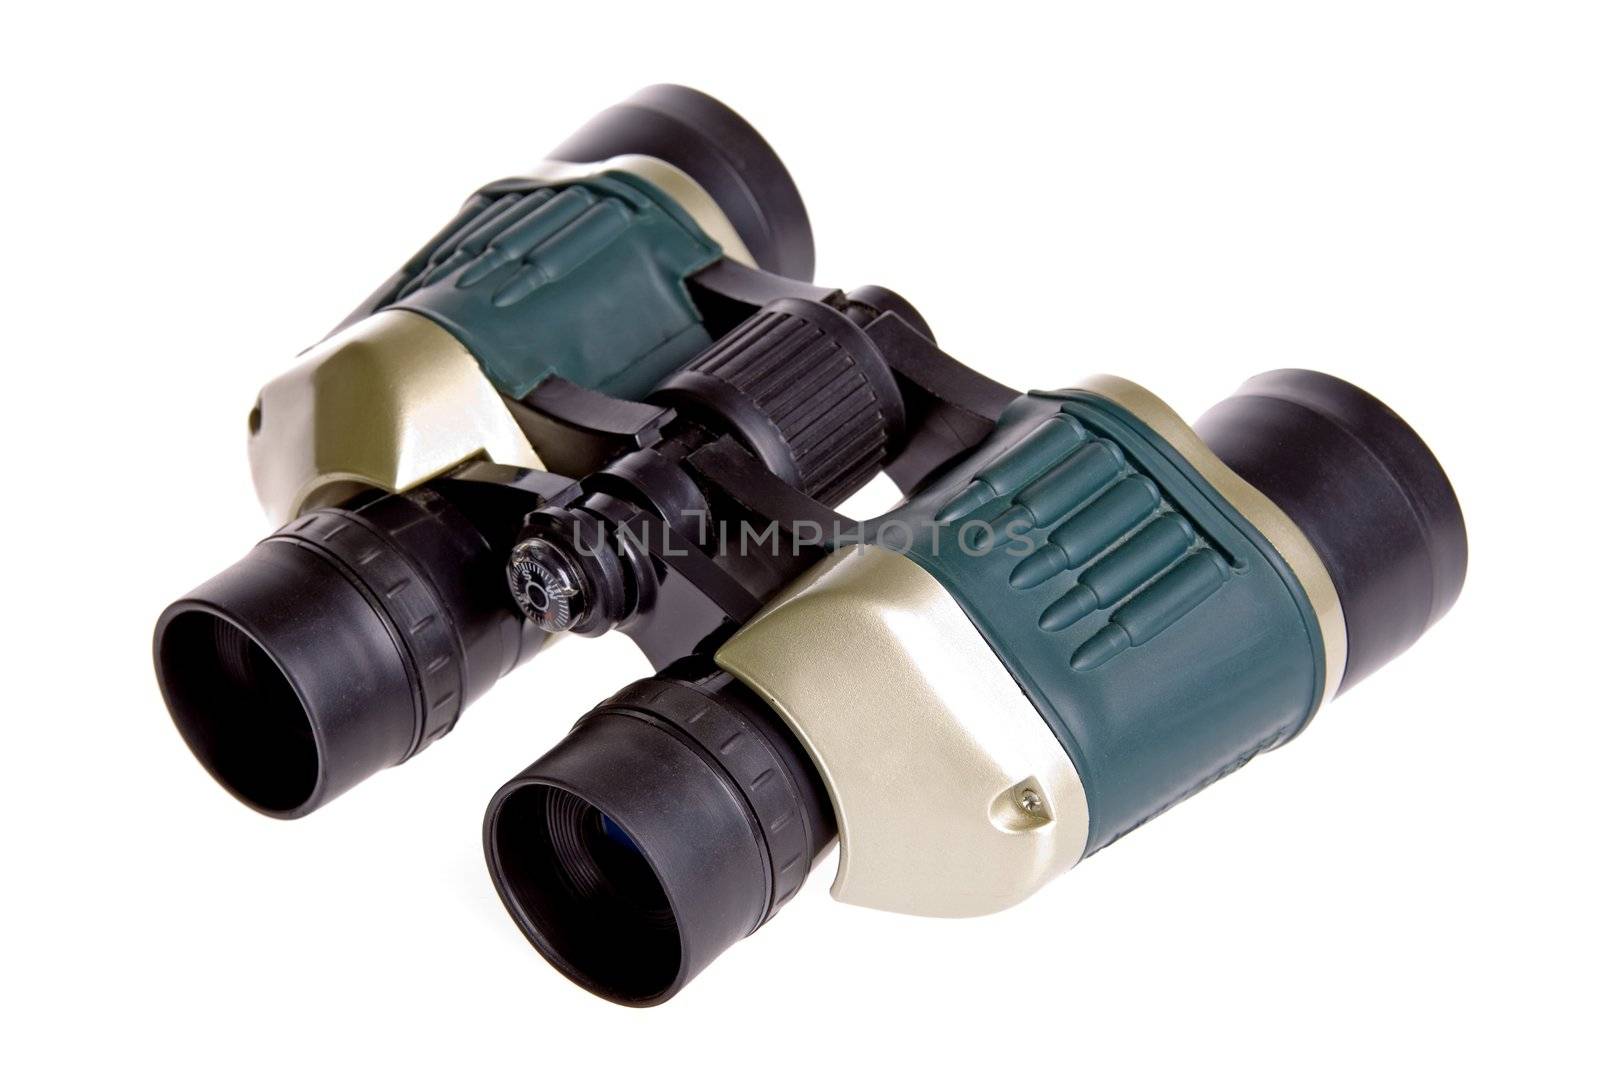 Isolated image of a binoculars.
